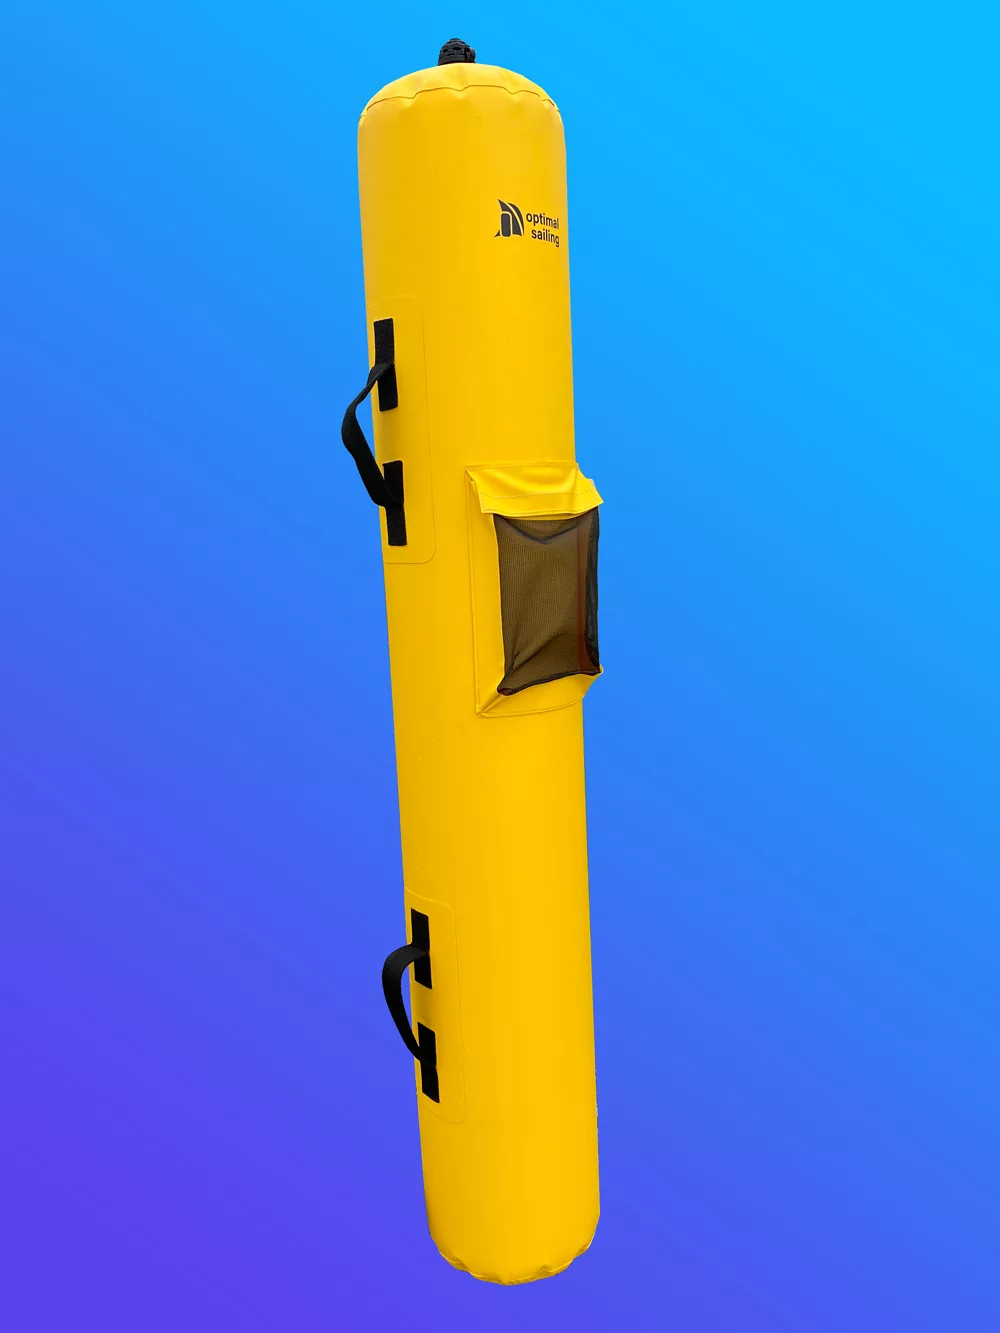 Course marker, training buoy, regatta buoy, yellow, narrow, flag pole